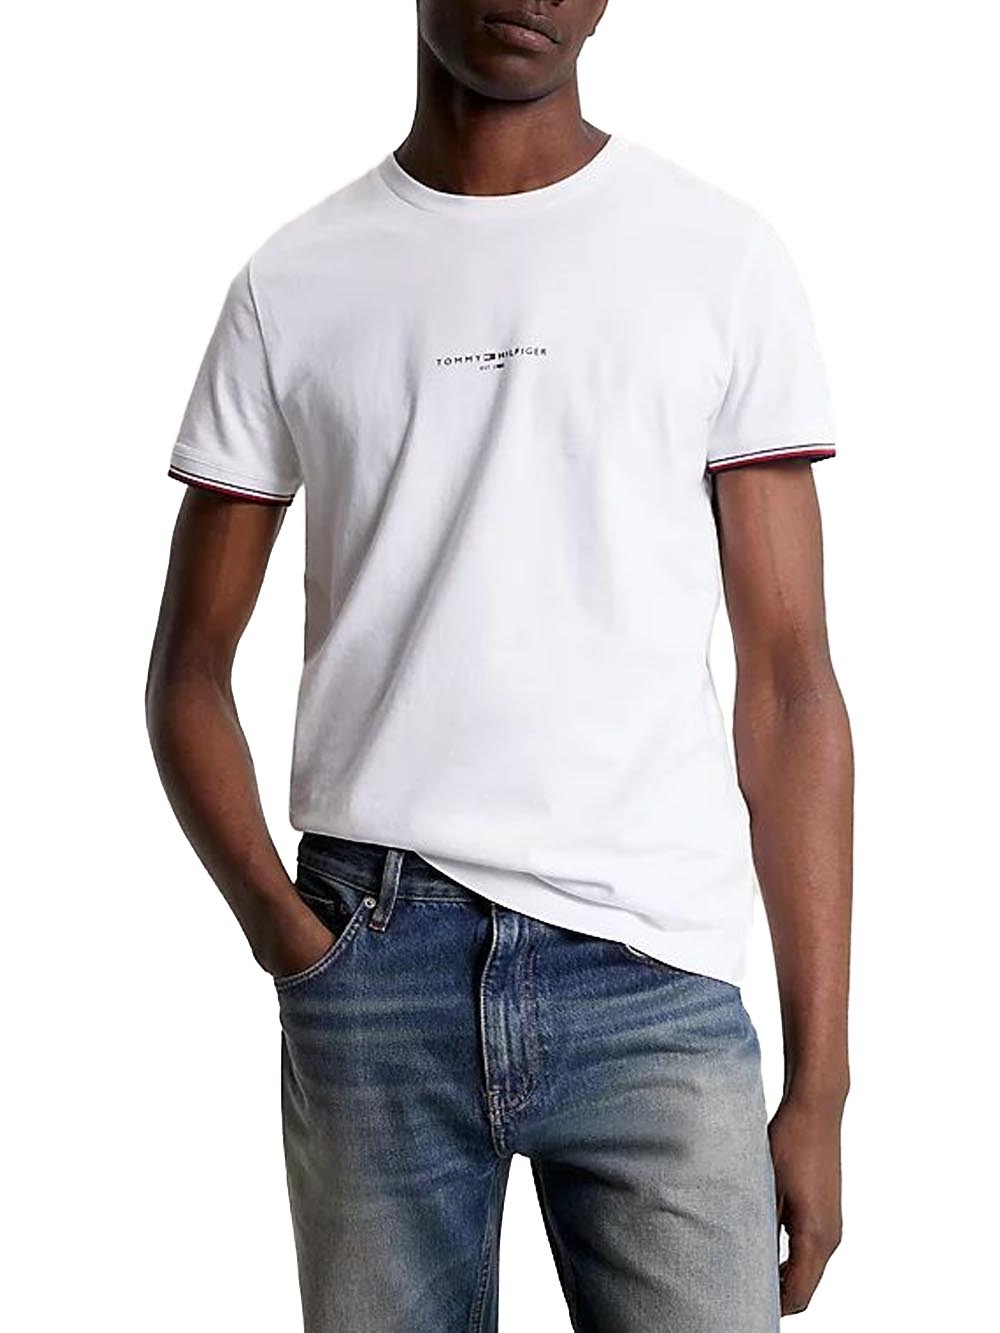 Tommy Hilfiger T-shirt Uomo Mw0mw32584 Bianco